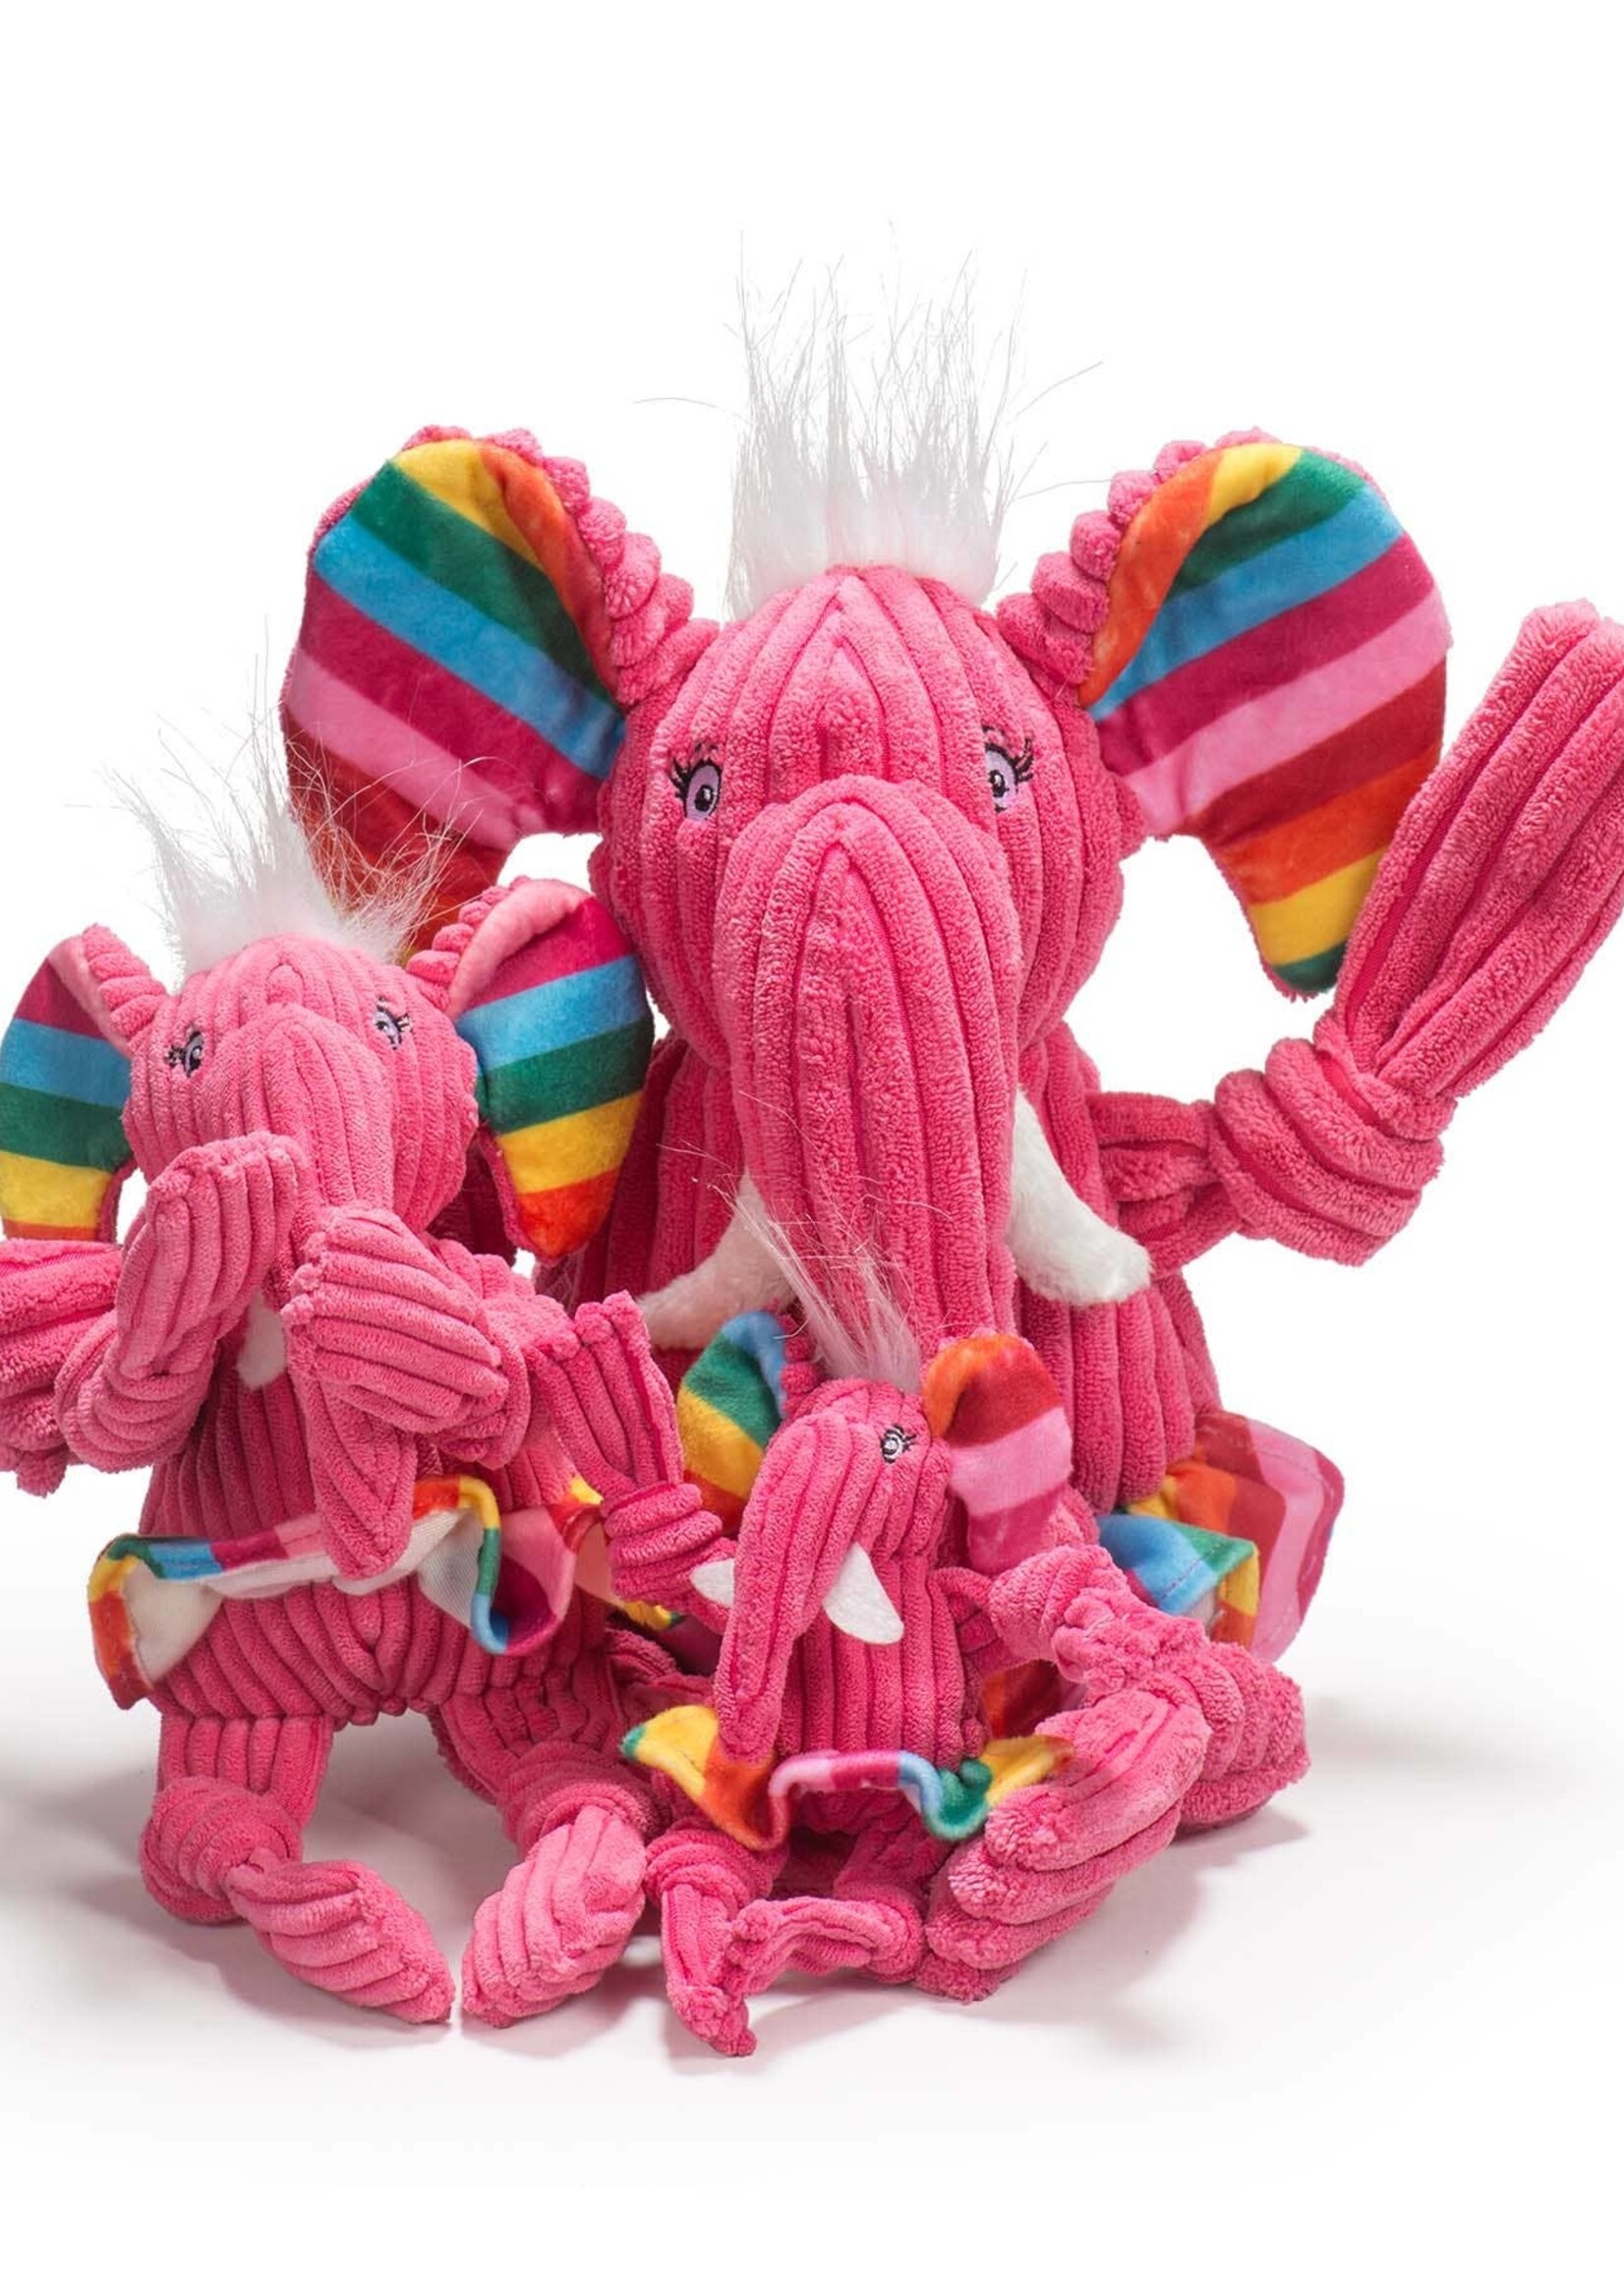 HuggleHounds HuggleHounds Rainbow Elephant Knottie Plush Dog Toy